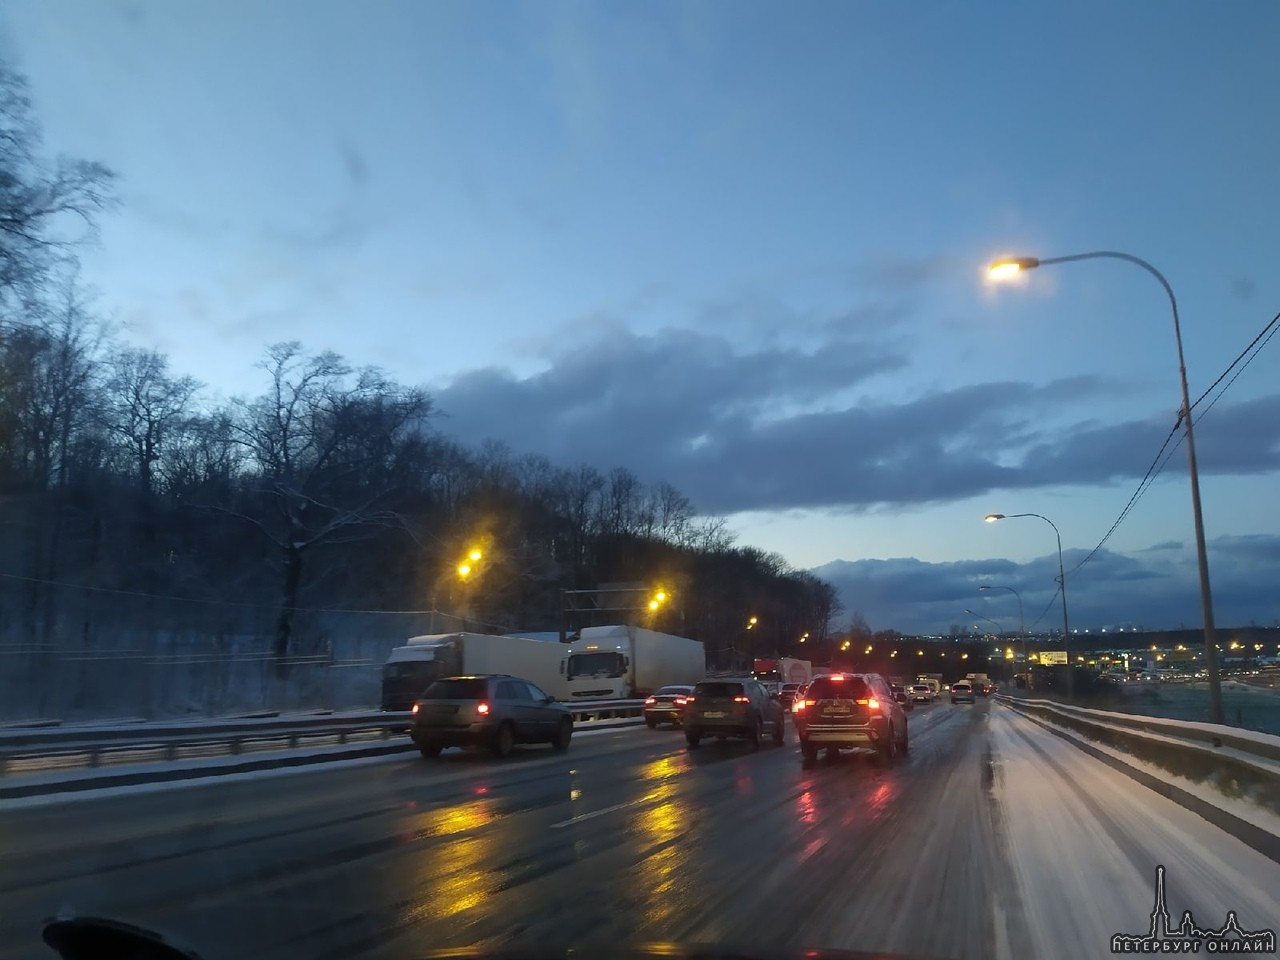 На Пулковском шоссе две фуры перекрыли дорогу на подъёме в горку. Пробка от метро Московская.